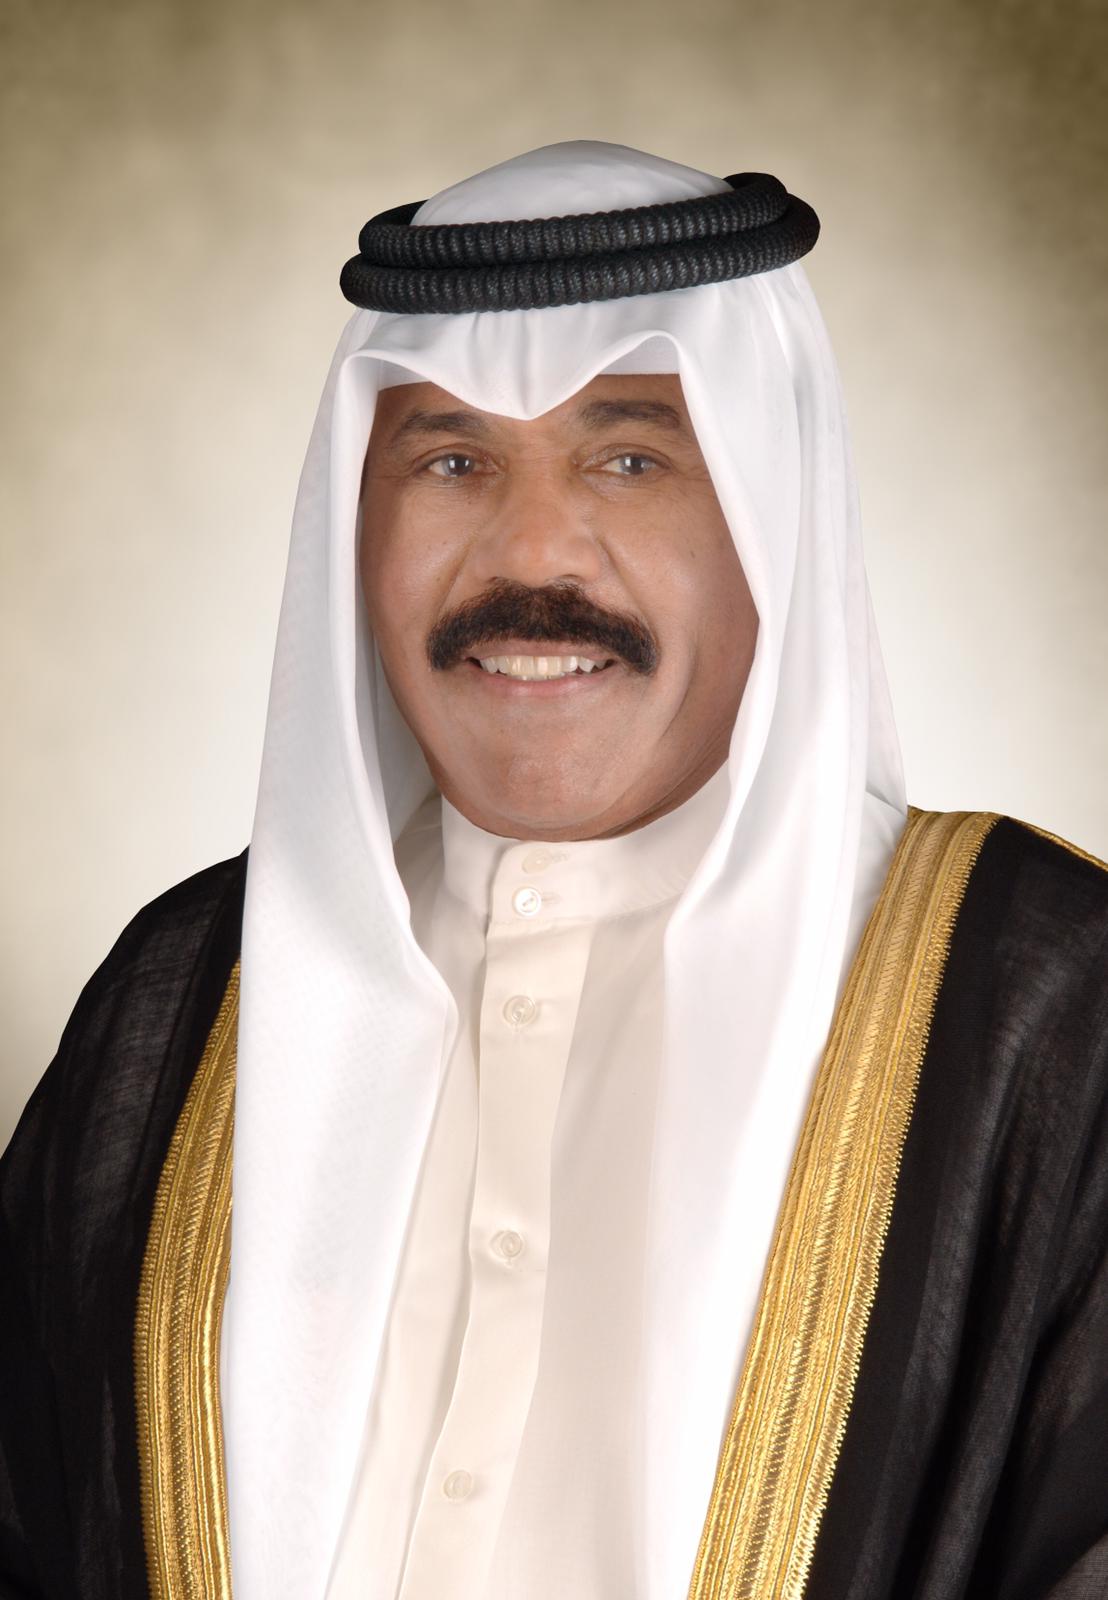 سمو أمير البلاد يبعث ببرقية تهنئة إلى رئيس نادي الكويت بمناسبة الفوز ببطولة كأس الأمير لكرة القدم للموسم الرياضي (2020 – 2021)